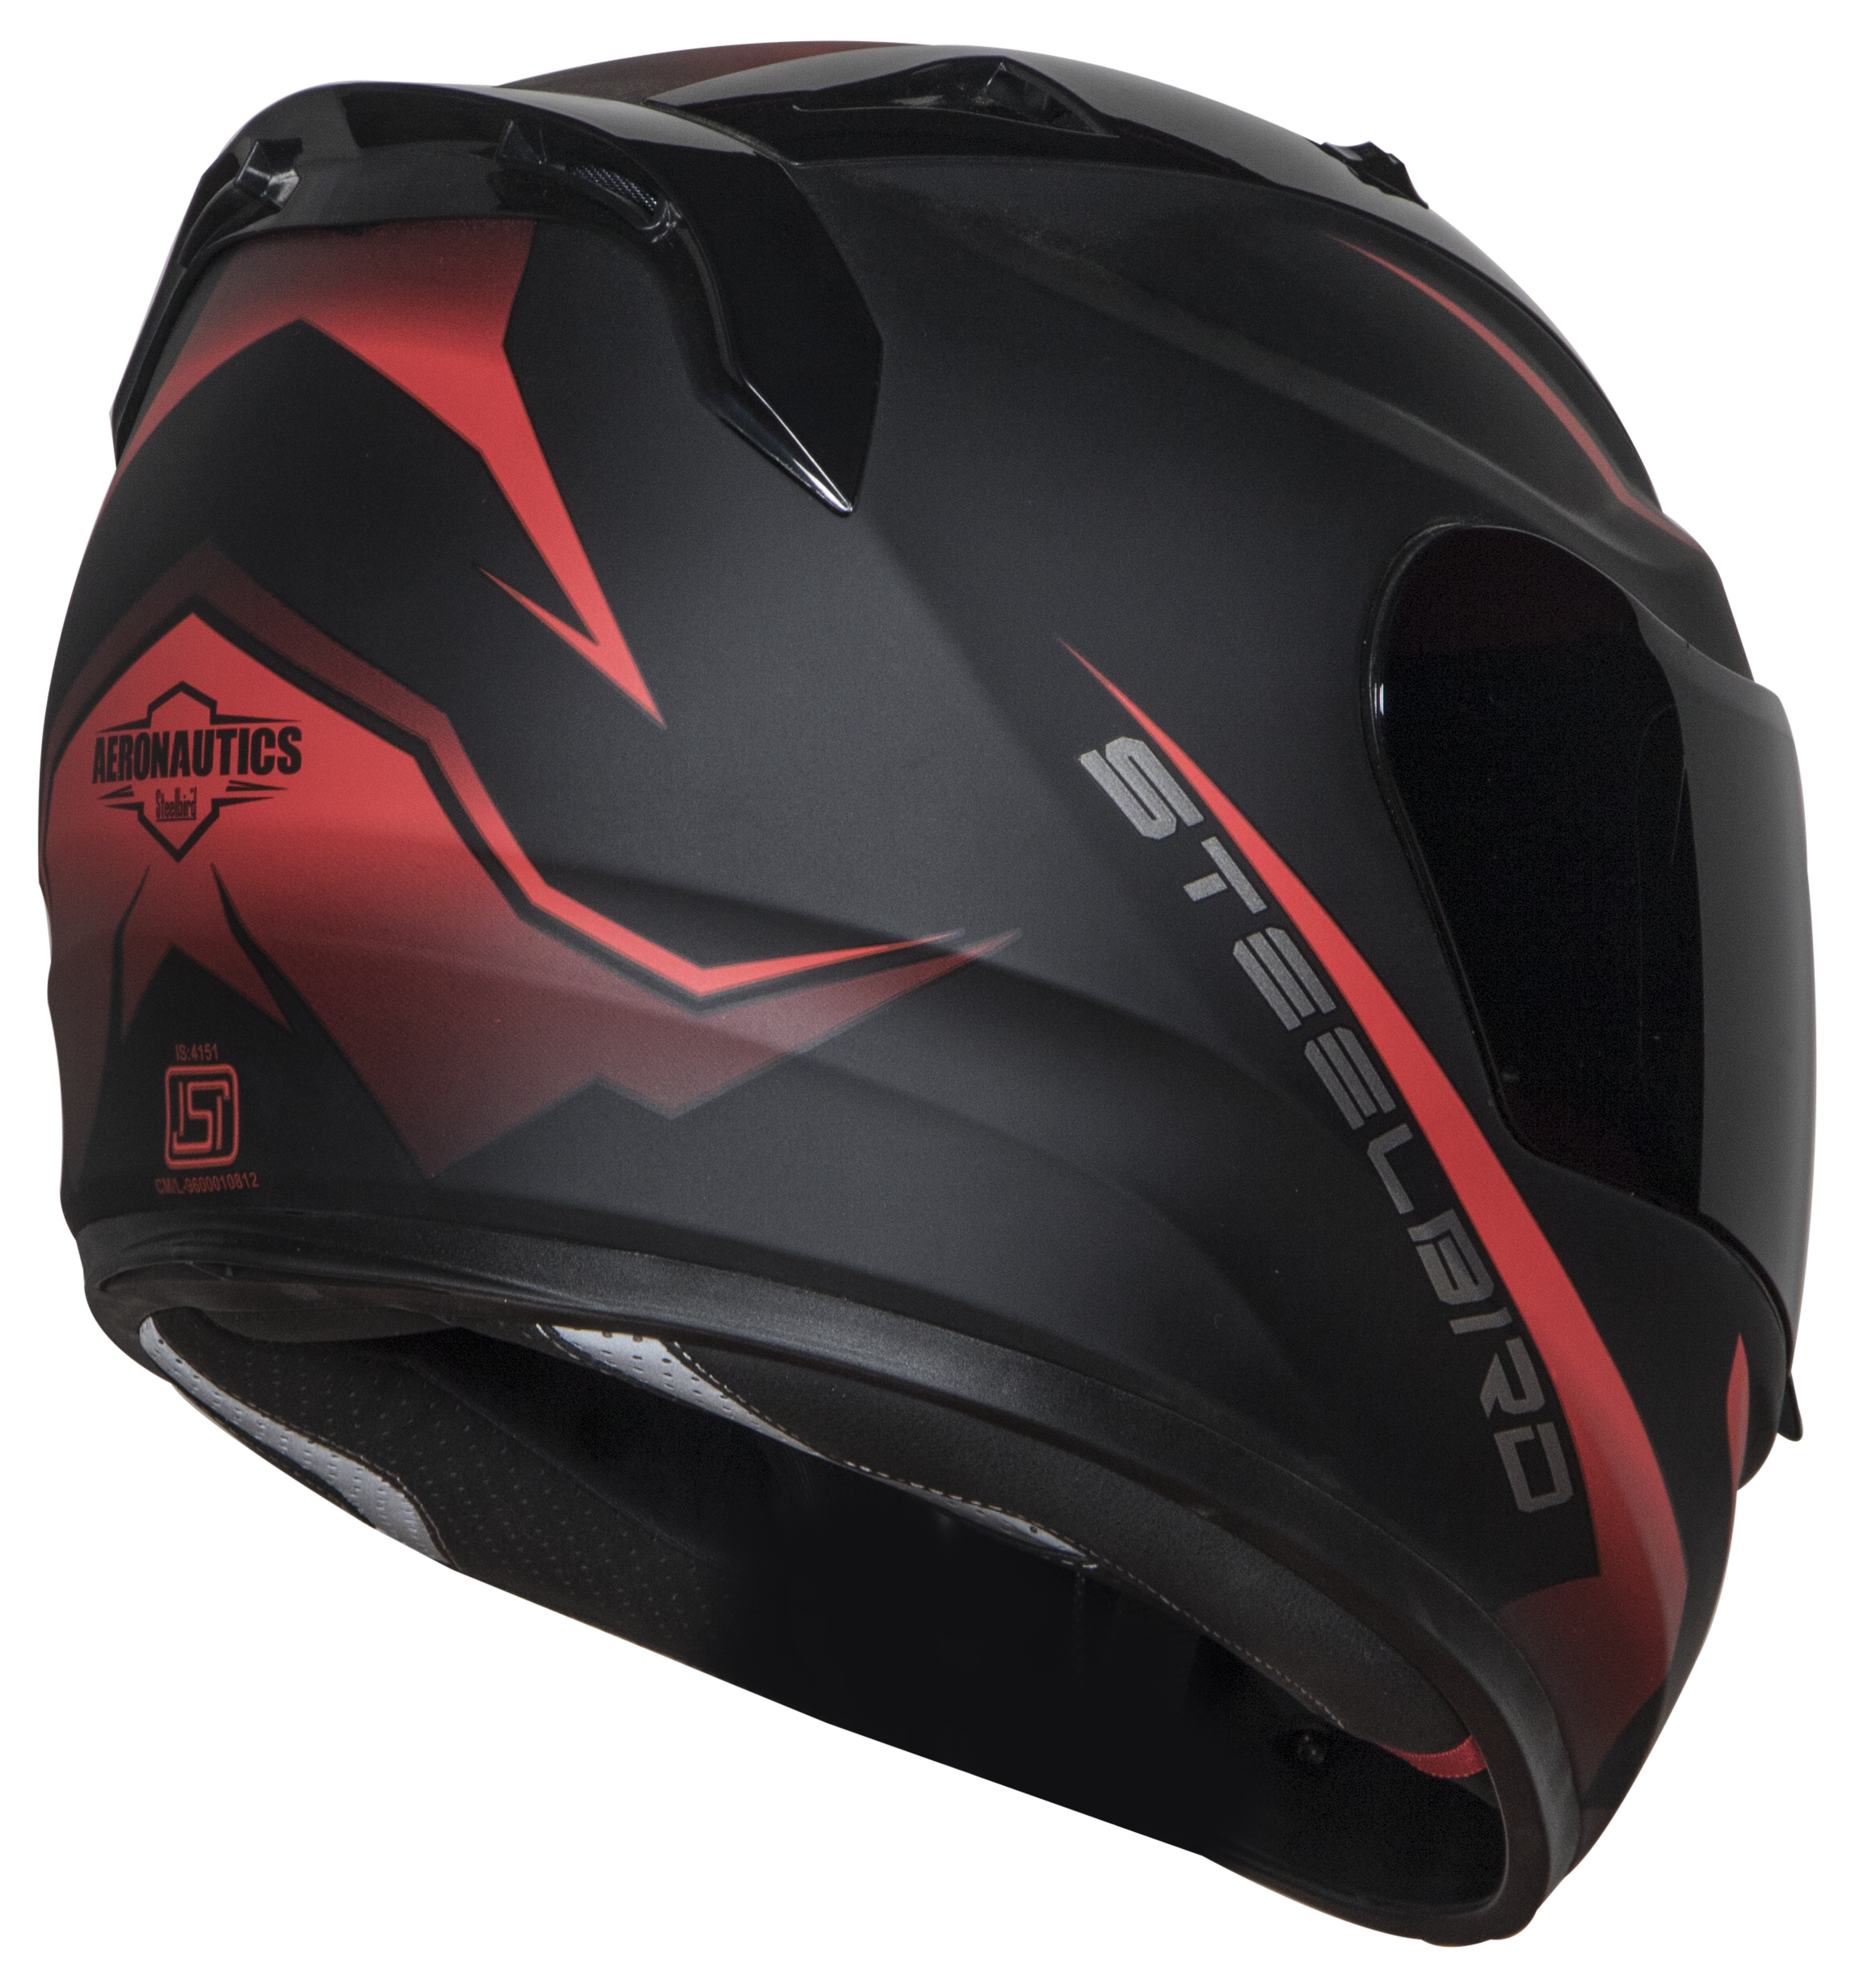 Steelbird SA-1 Whif ISI Certified Full Face Helmet (Matt Black Red With Chrome Gold Visor)